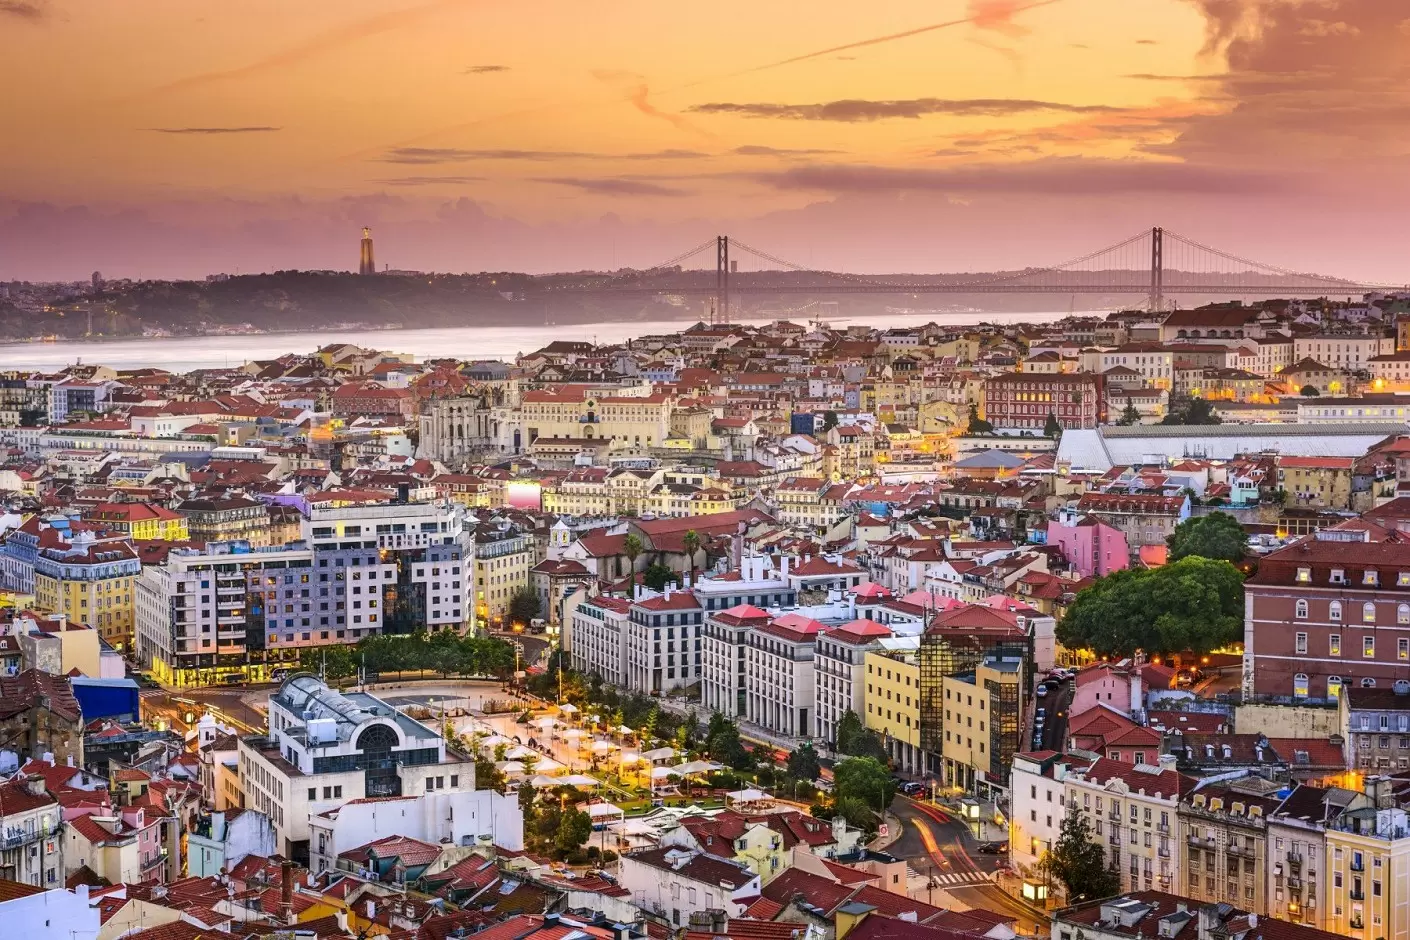 Ką verta žinoti prieš vykstant į Lisaboną?